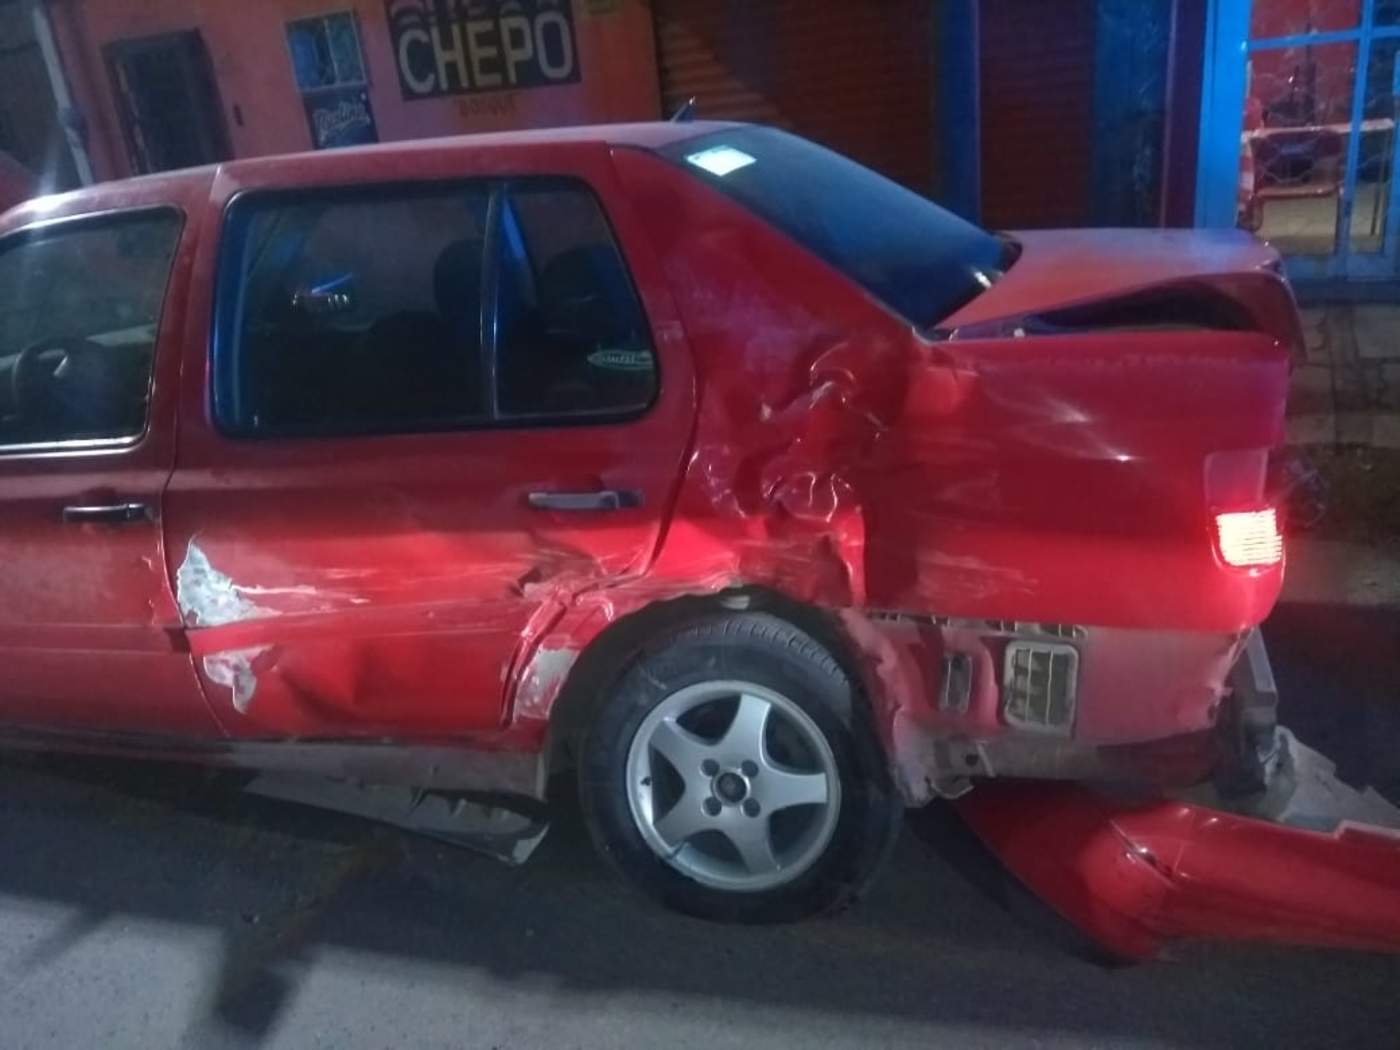 Presuntamente no respetó la luz roja en el semáforo y se impactó contra un automóvil Volkswagen Jetta modelo 1999 de color rojo, el cual circulaba por la calzada Cuauhtémoc. (EL SIGLO DE TORREÓN)